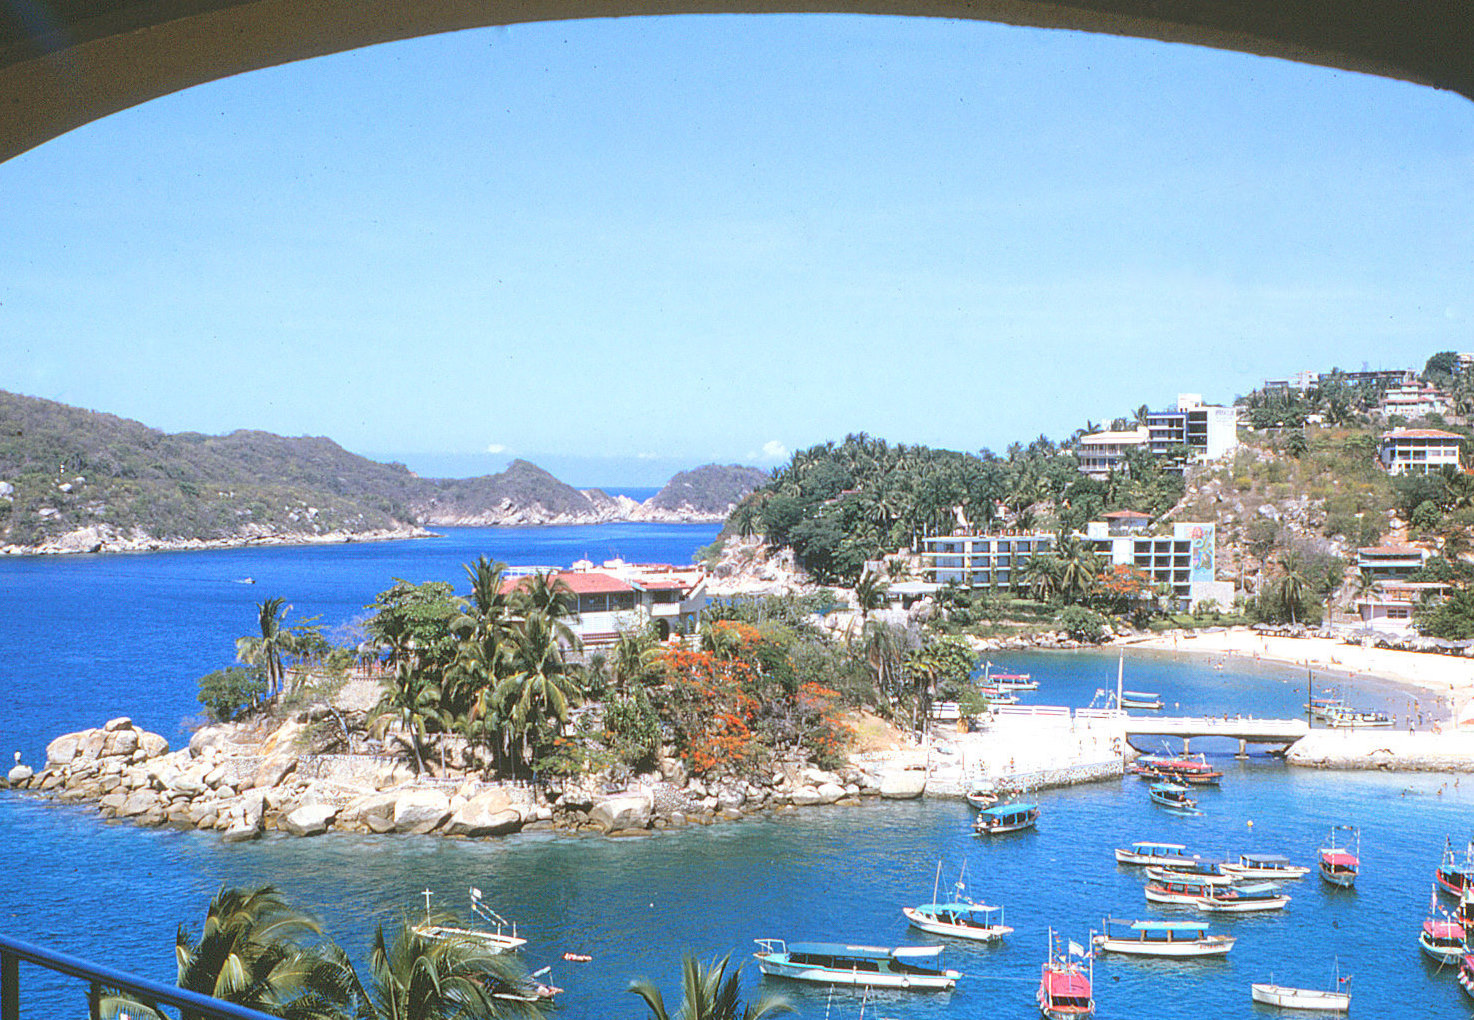 Caleta_Beach_in_Acapulco,_Mexico_1966